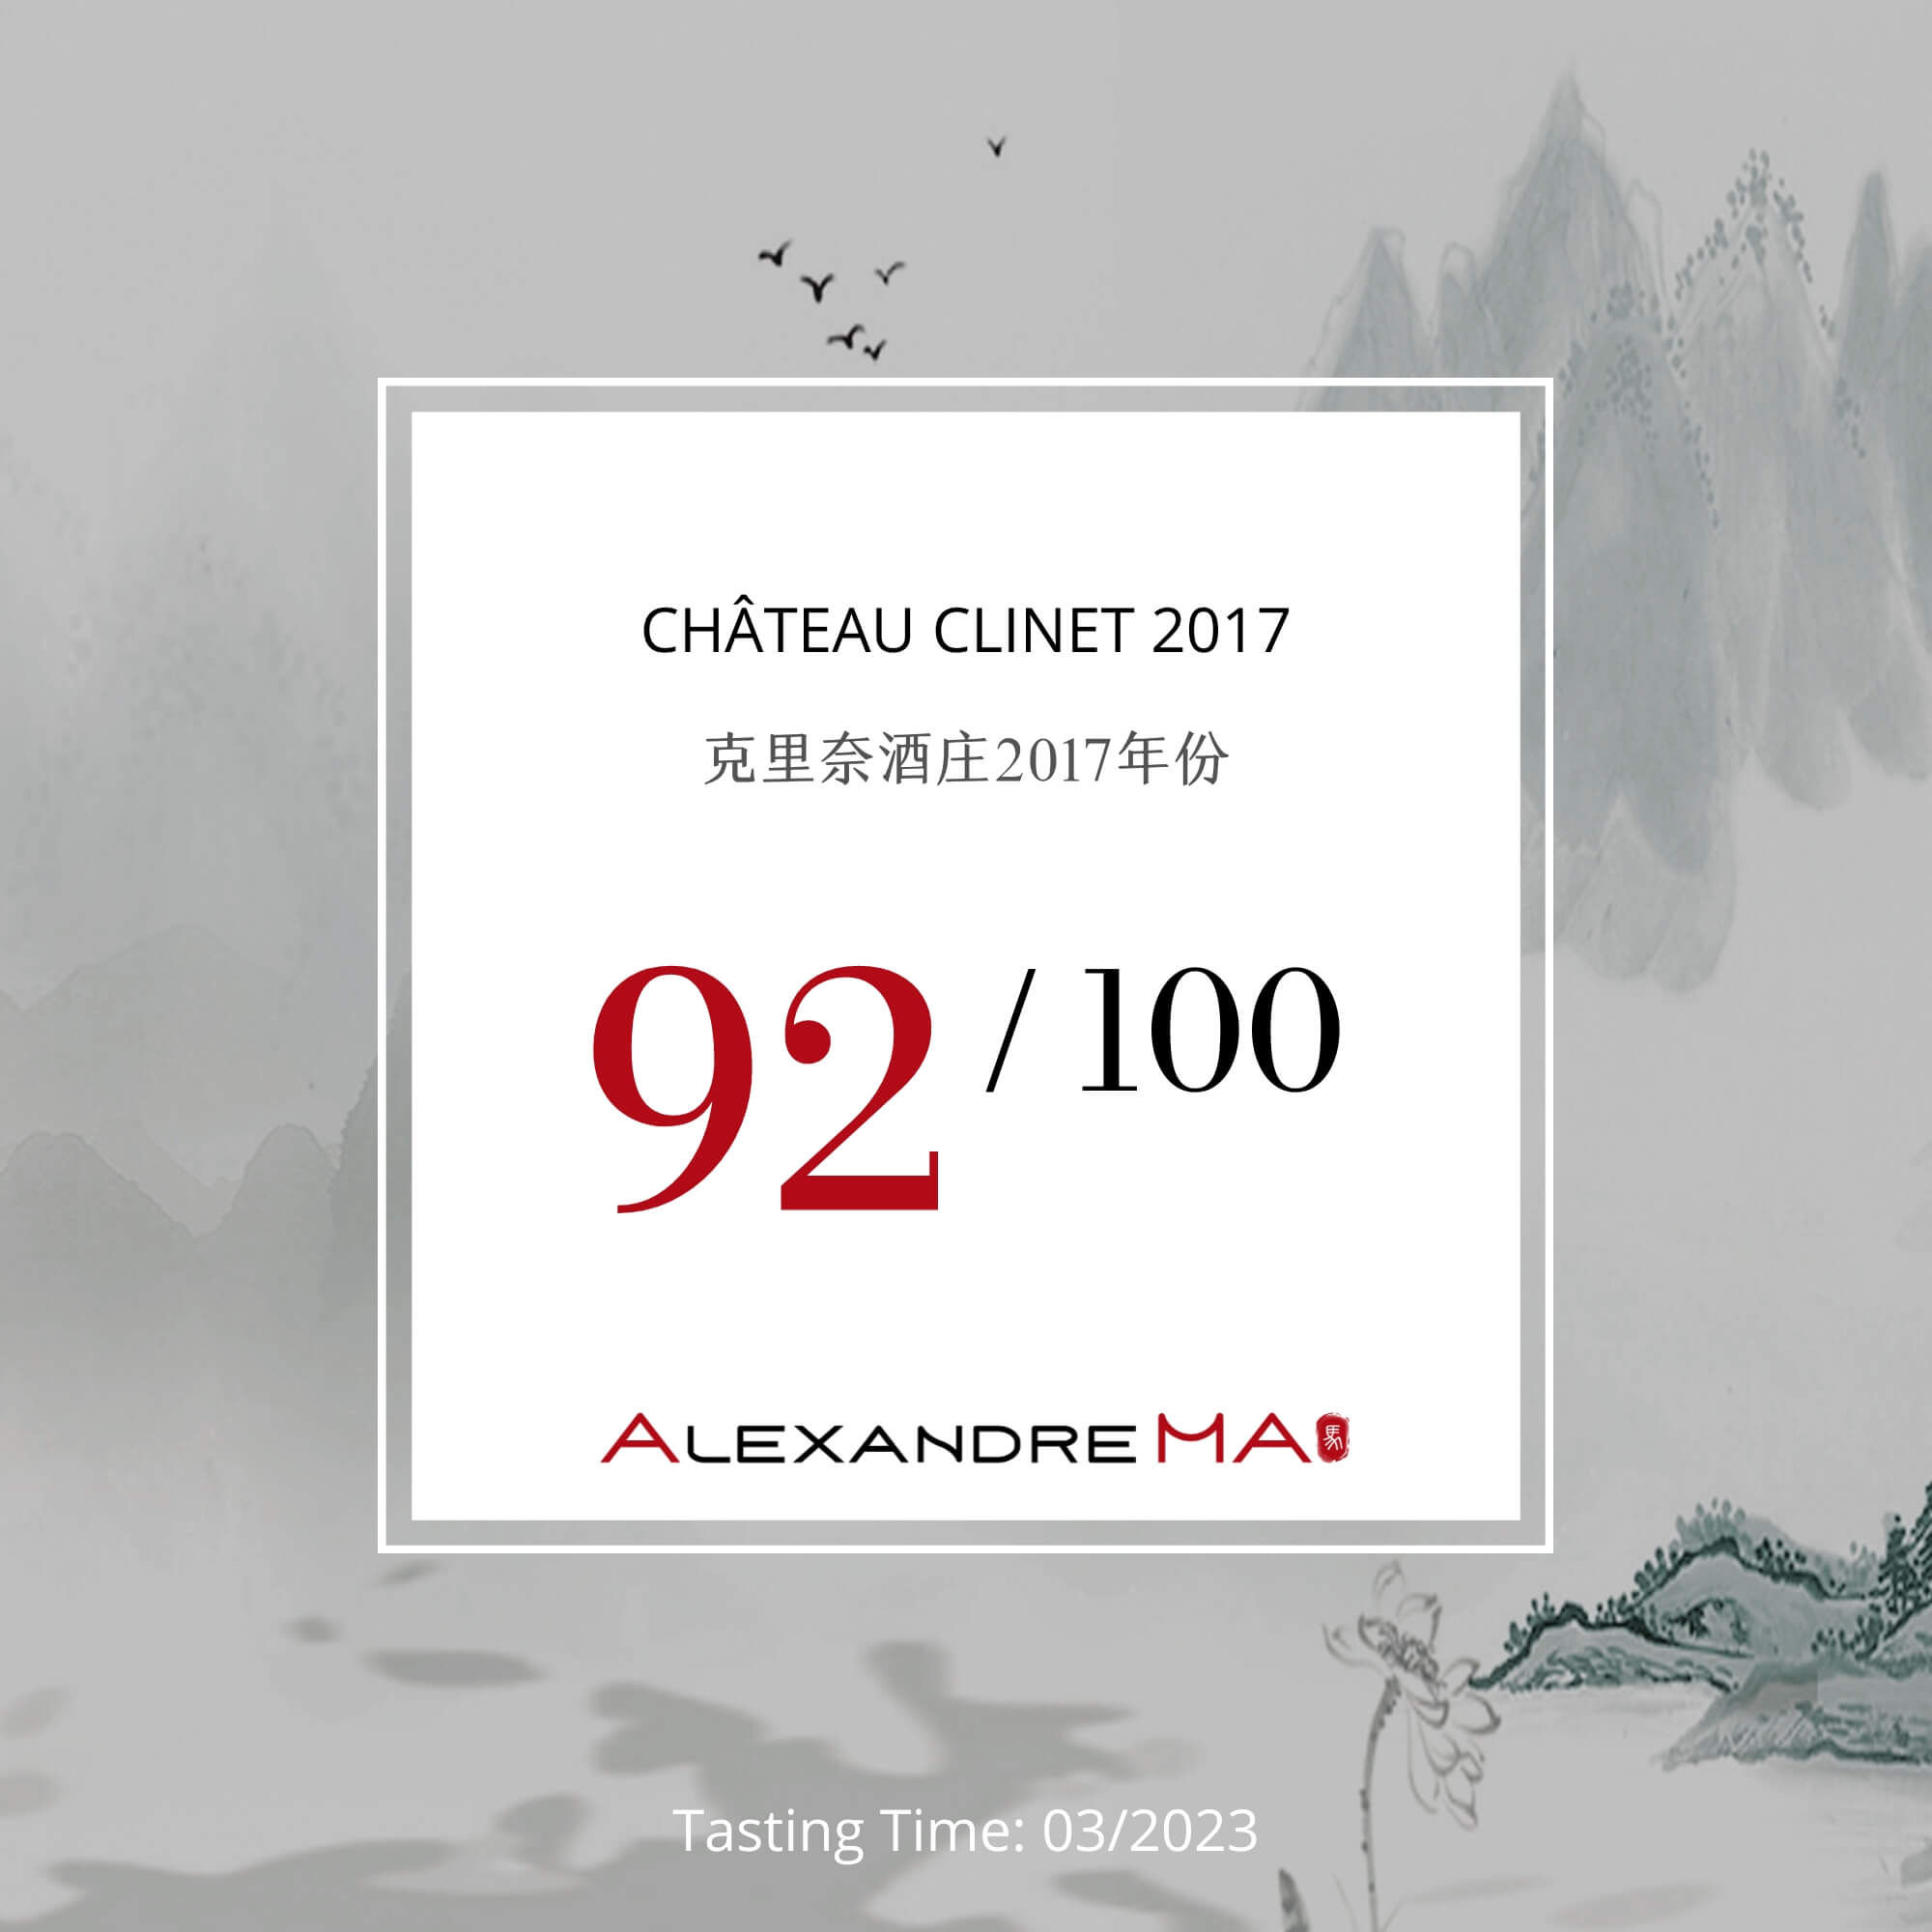 Château Clinet 2017 - Alexandre MA